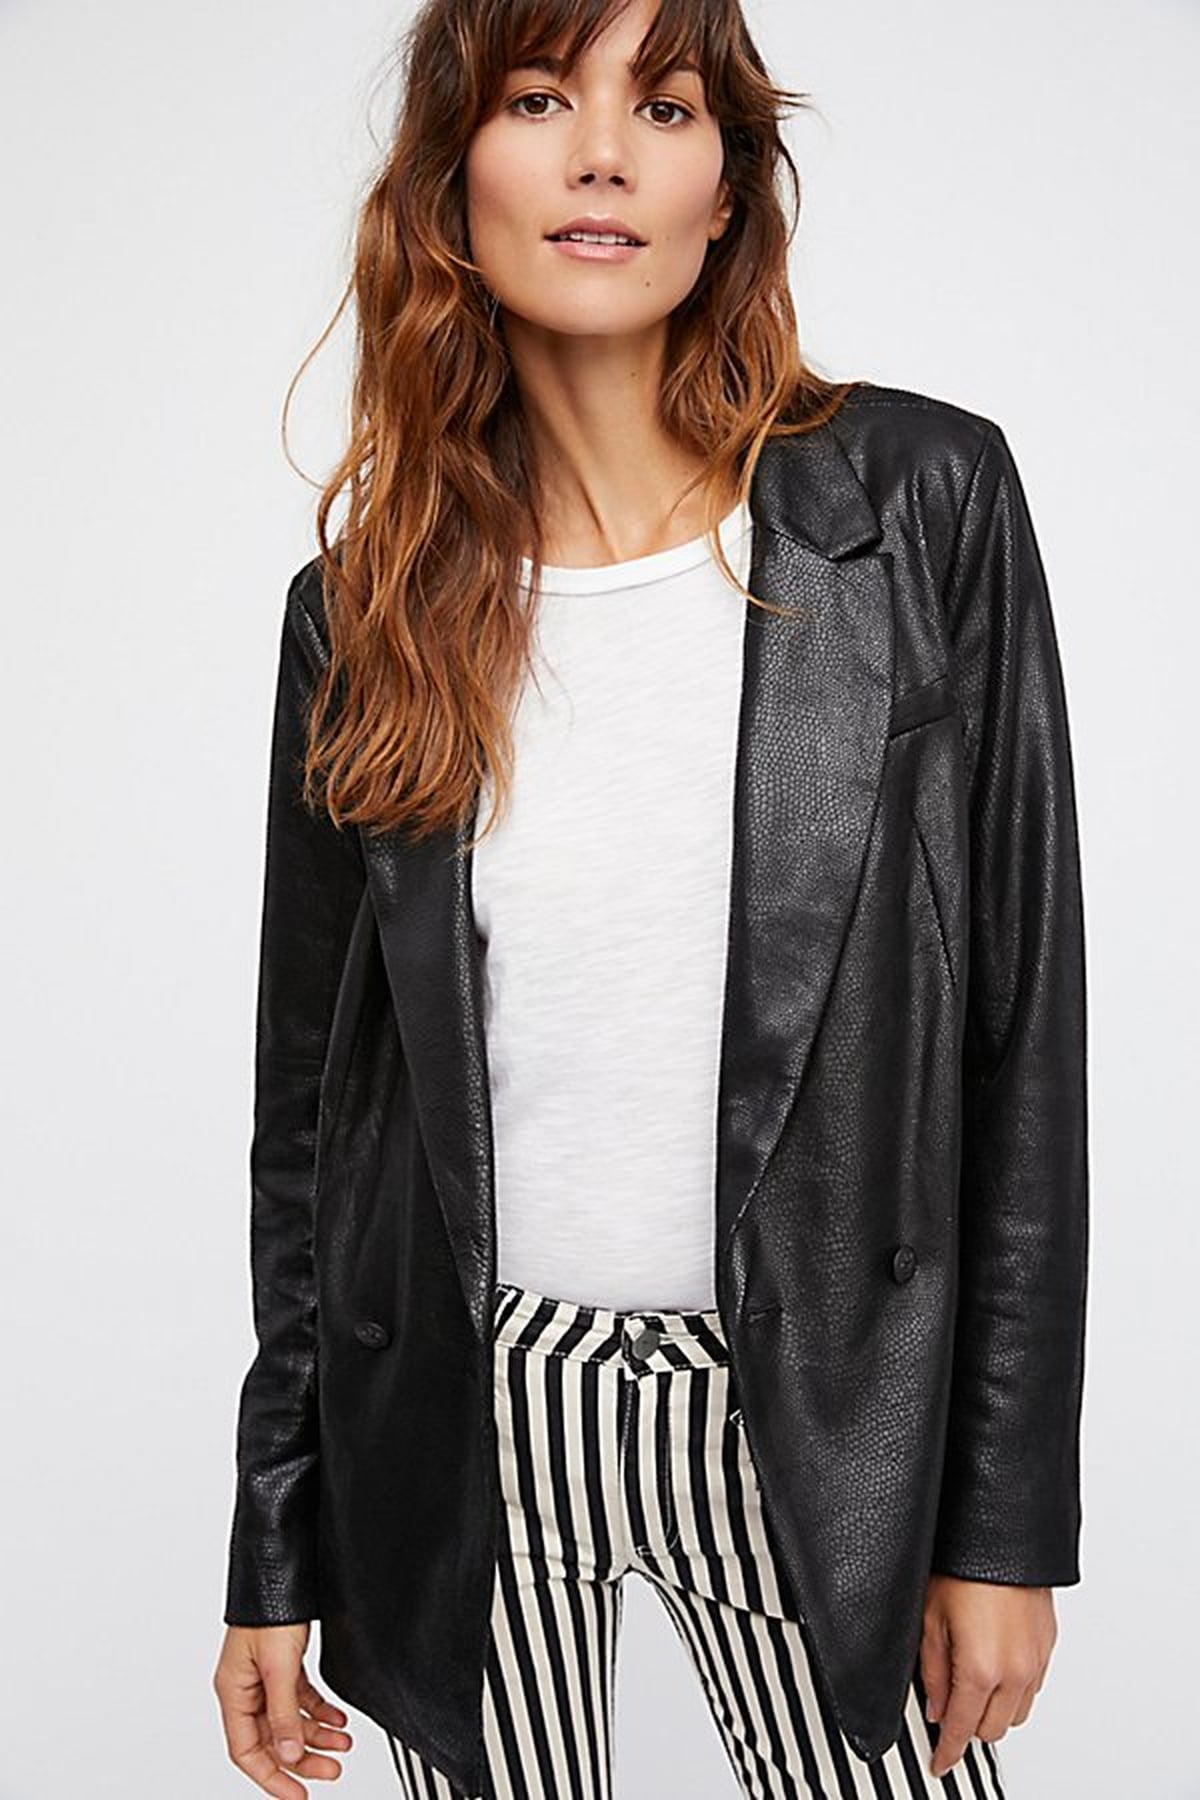 Kendall Jenner R13 Leather Jacket | POPSUGAR Fashion